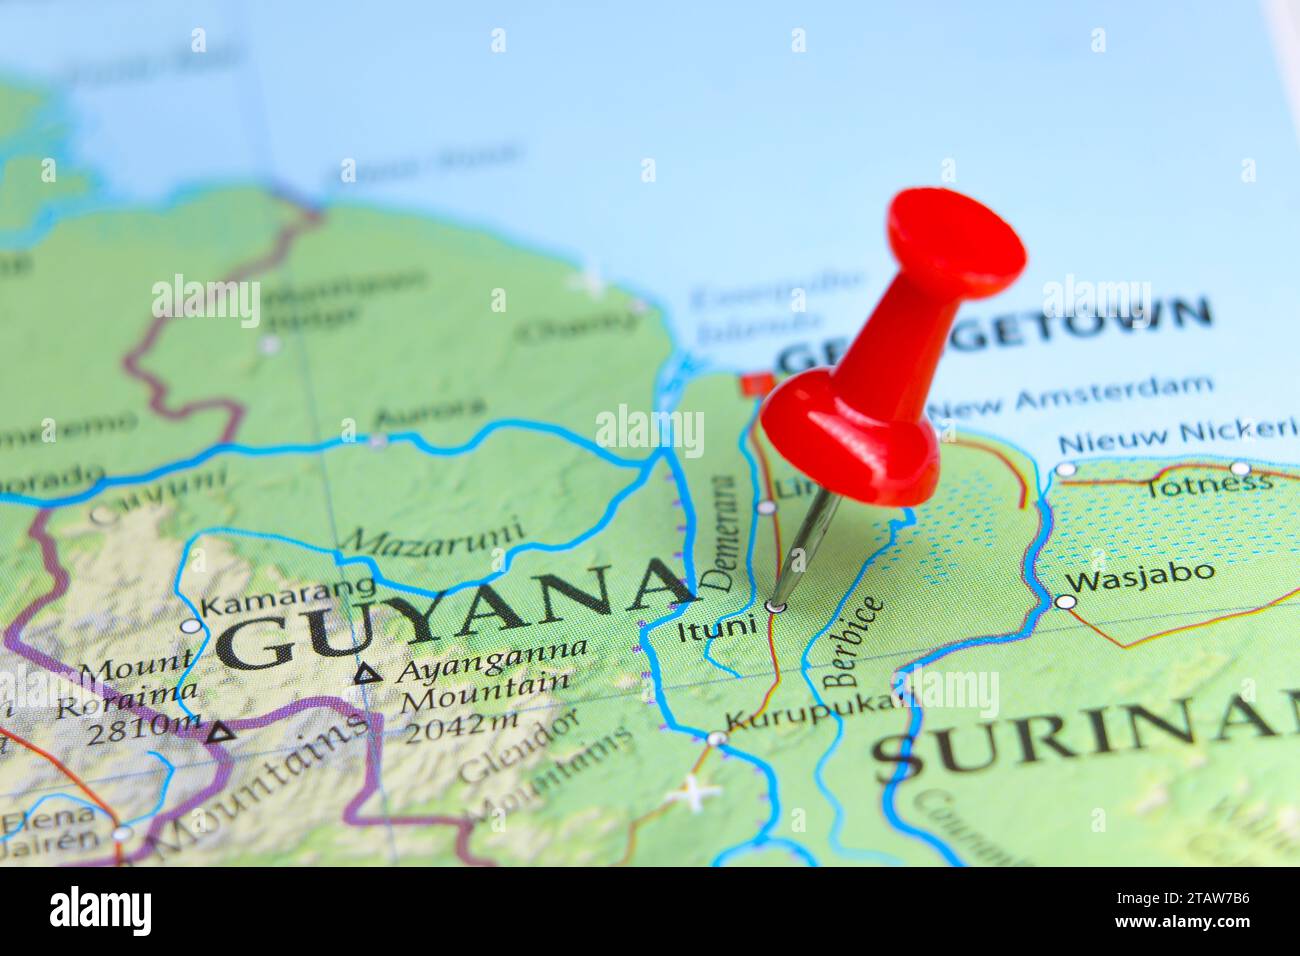 Ituni, Guayana pin on map Stock Photo